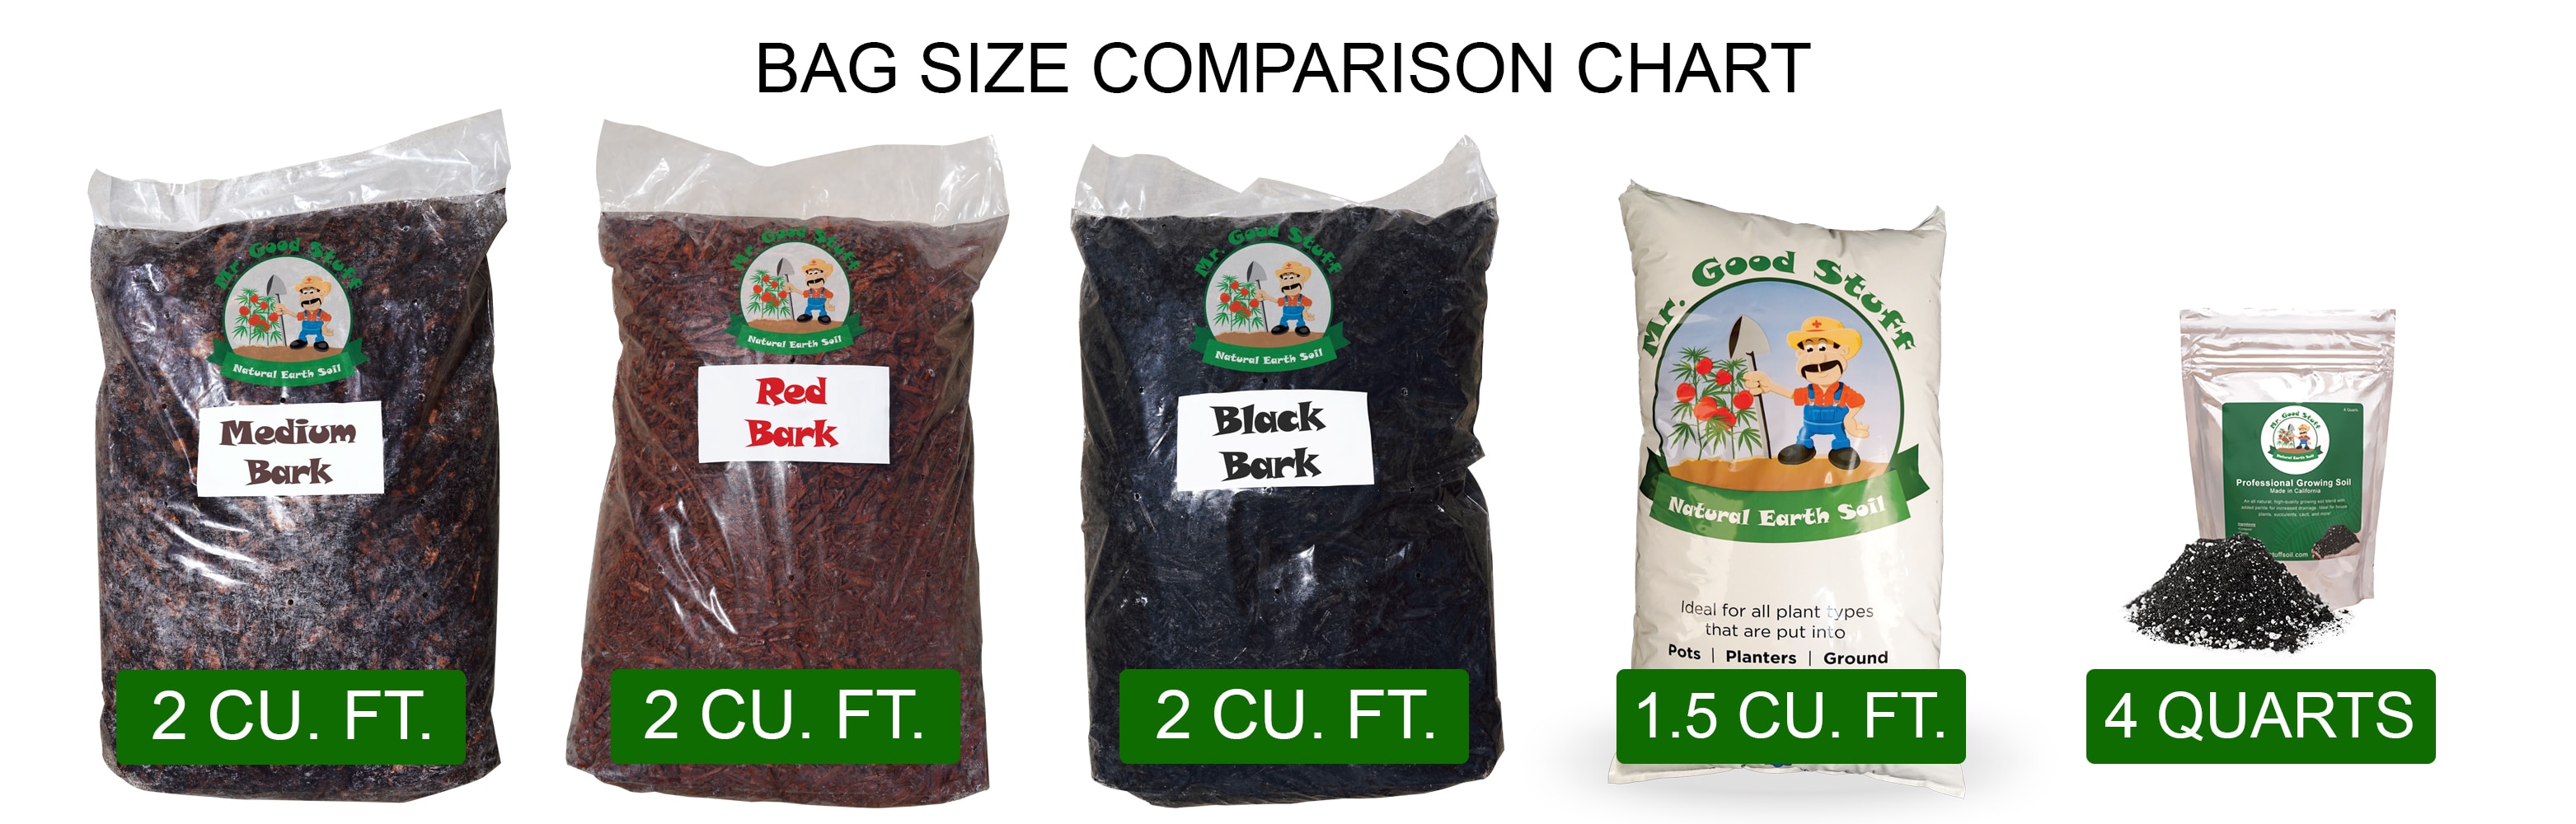 Bag Size Comparison Chart